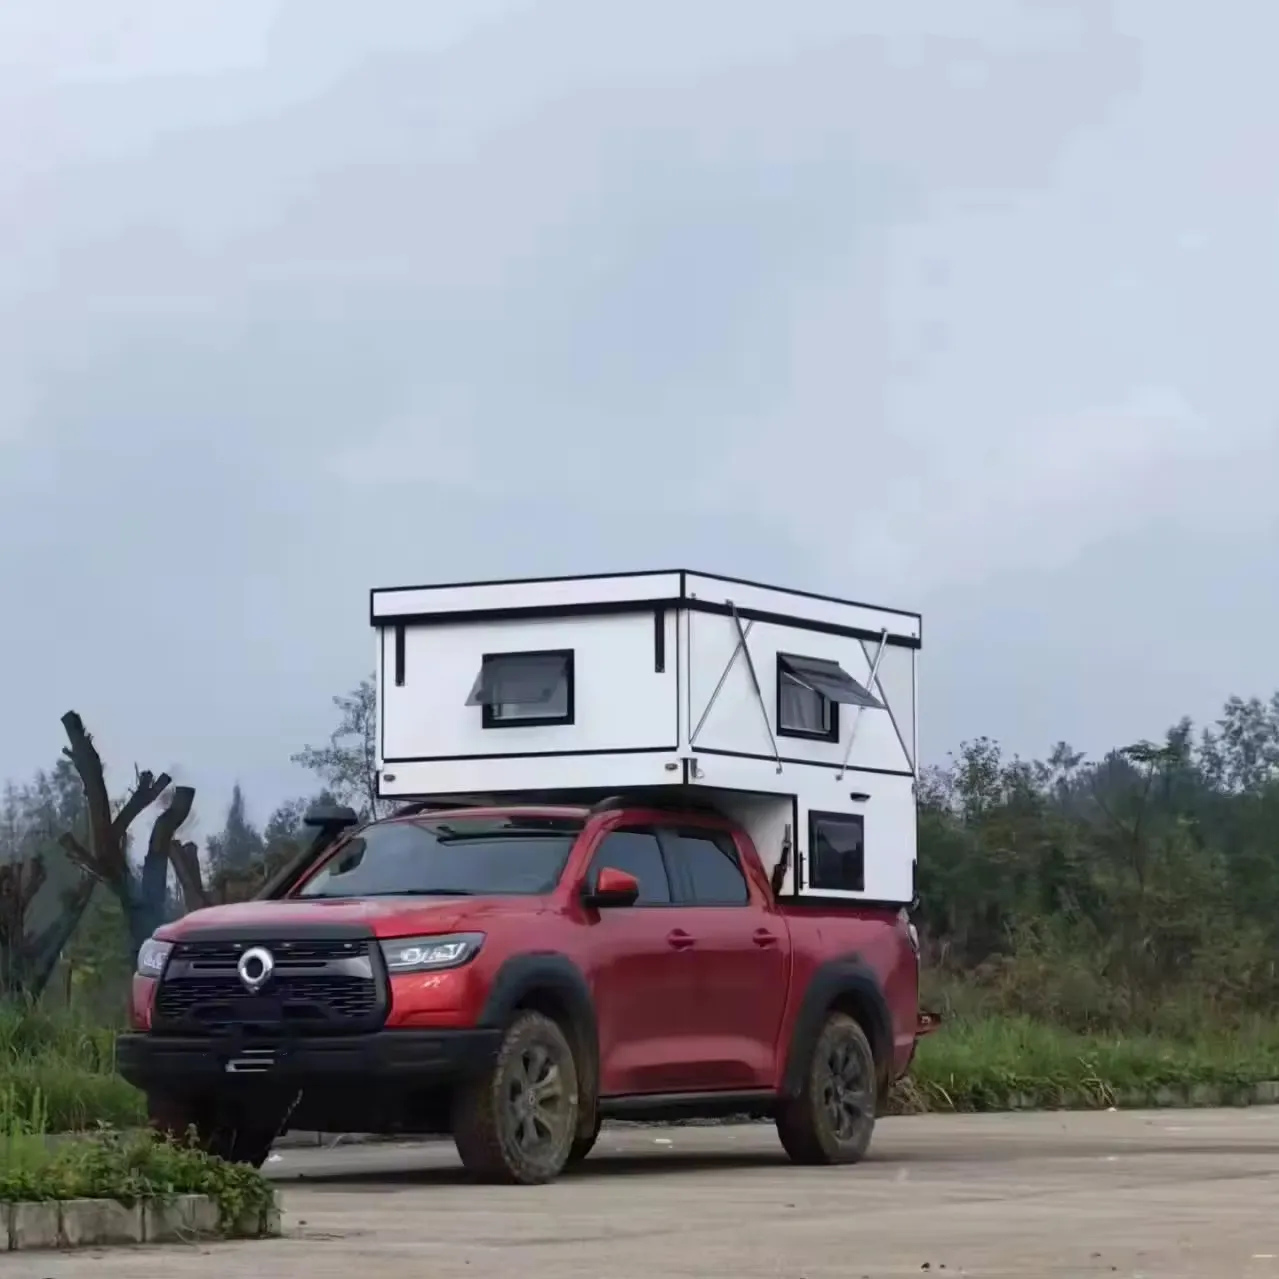 Individuelles neues Design 4 × 4 Gelände Auto Camping Wohnmobil Wohnwagen Wohnanhänger Anhänger